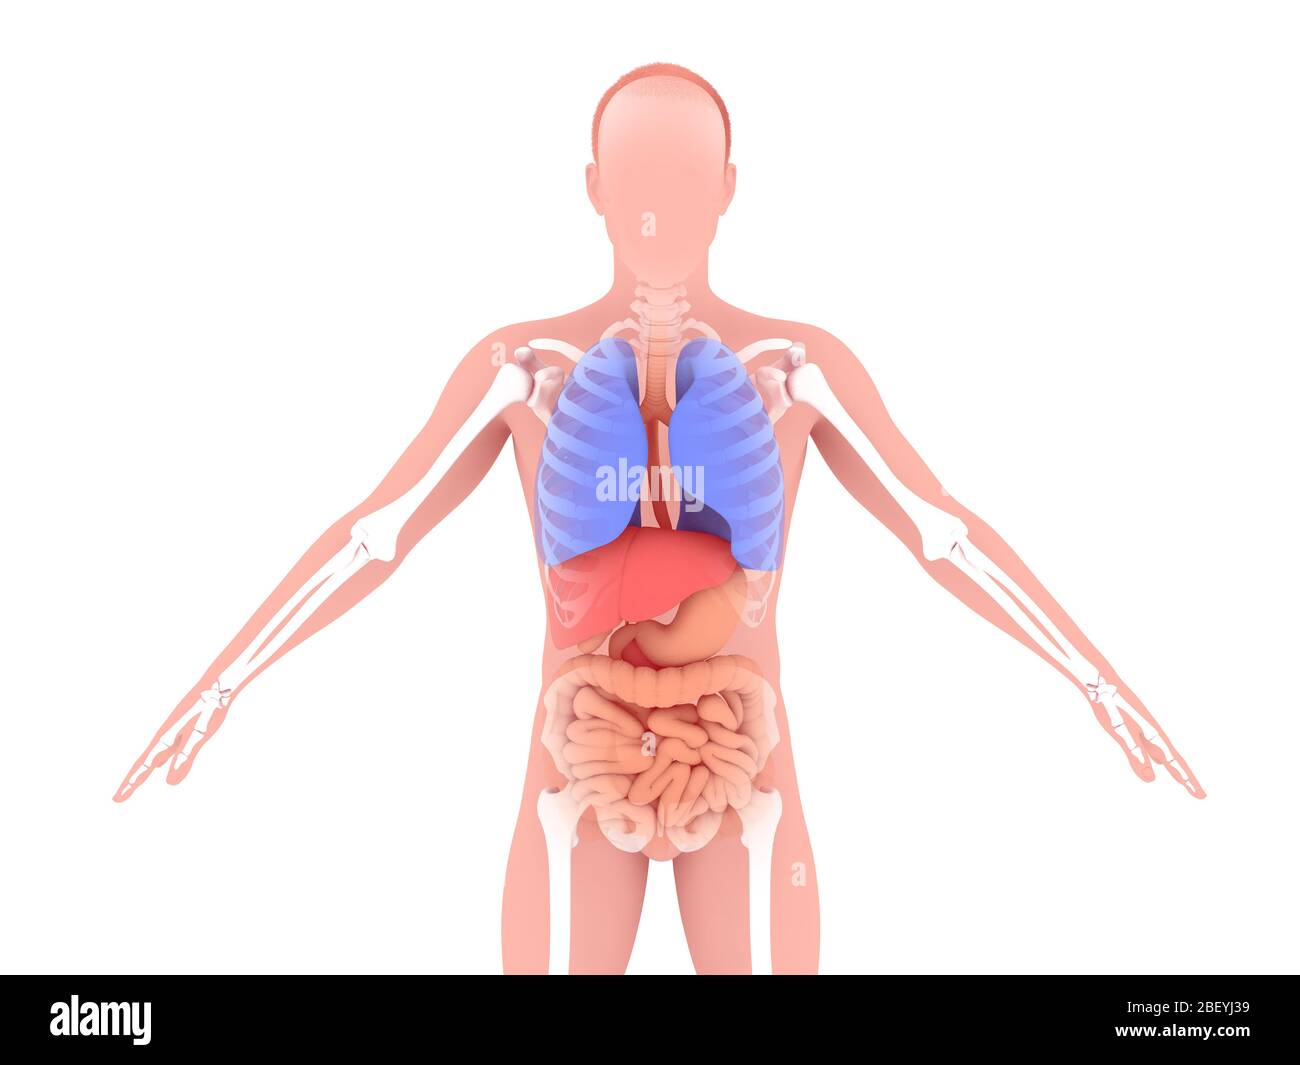 Ilustración 3D de la anatomía interna del hombre, mostrando el sistema respiratorio y digestivo y el esqueleto Foto de stock